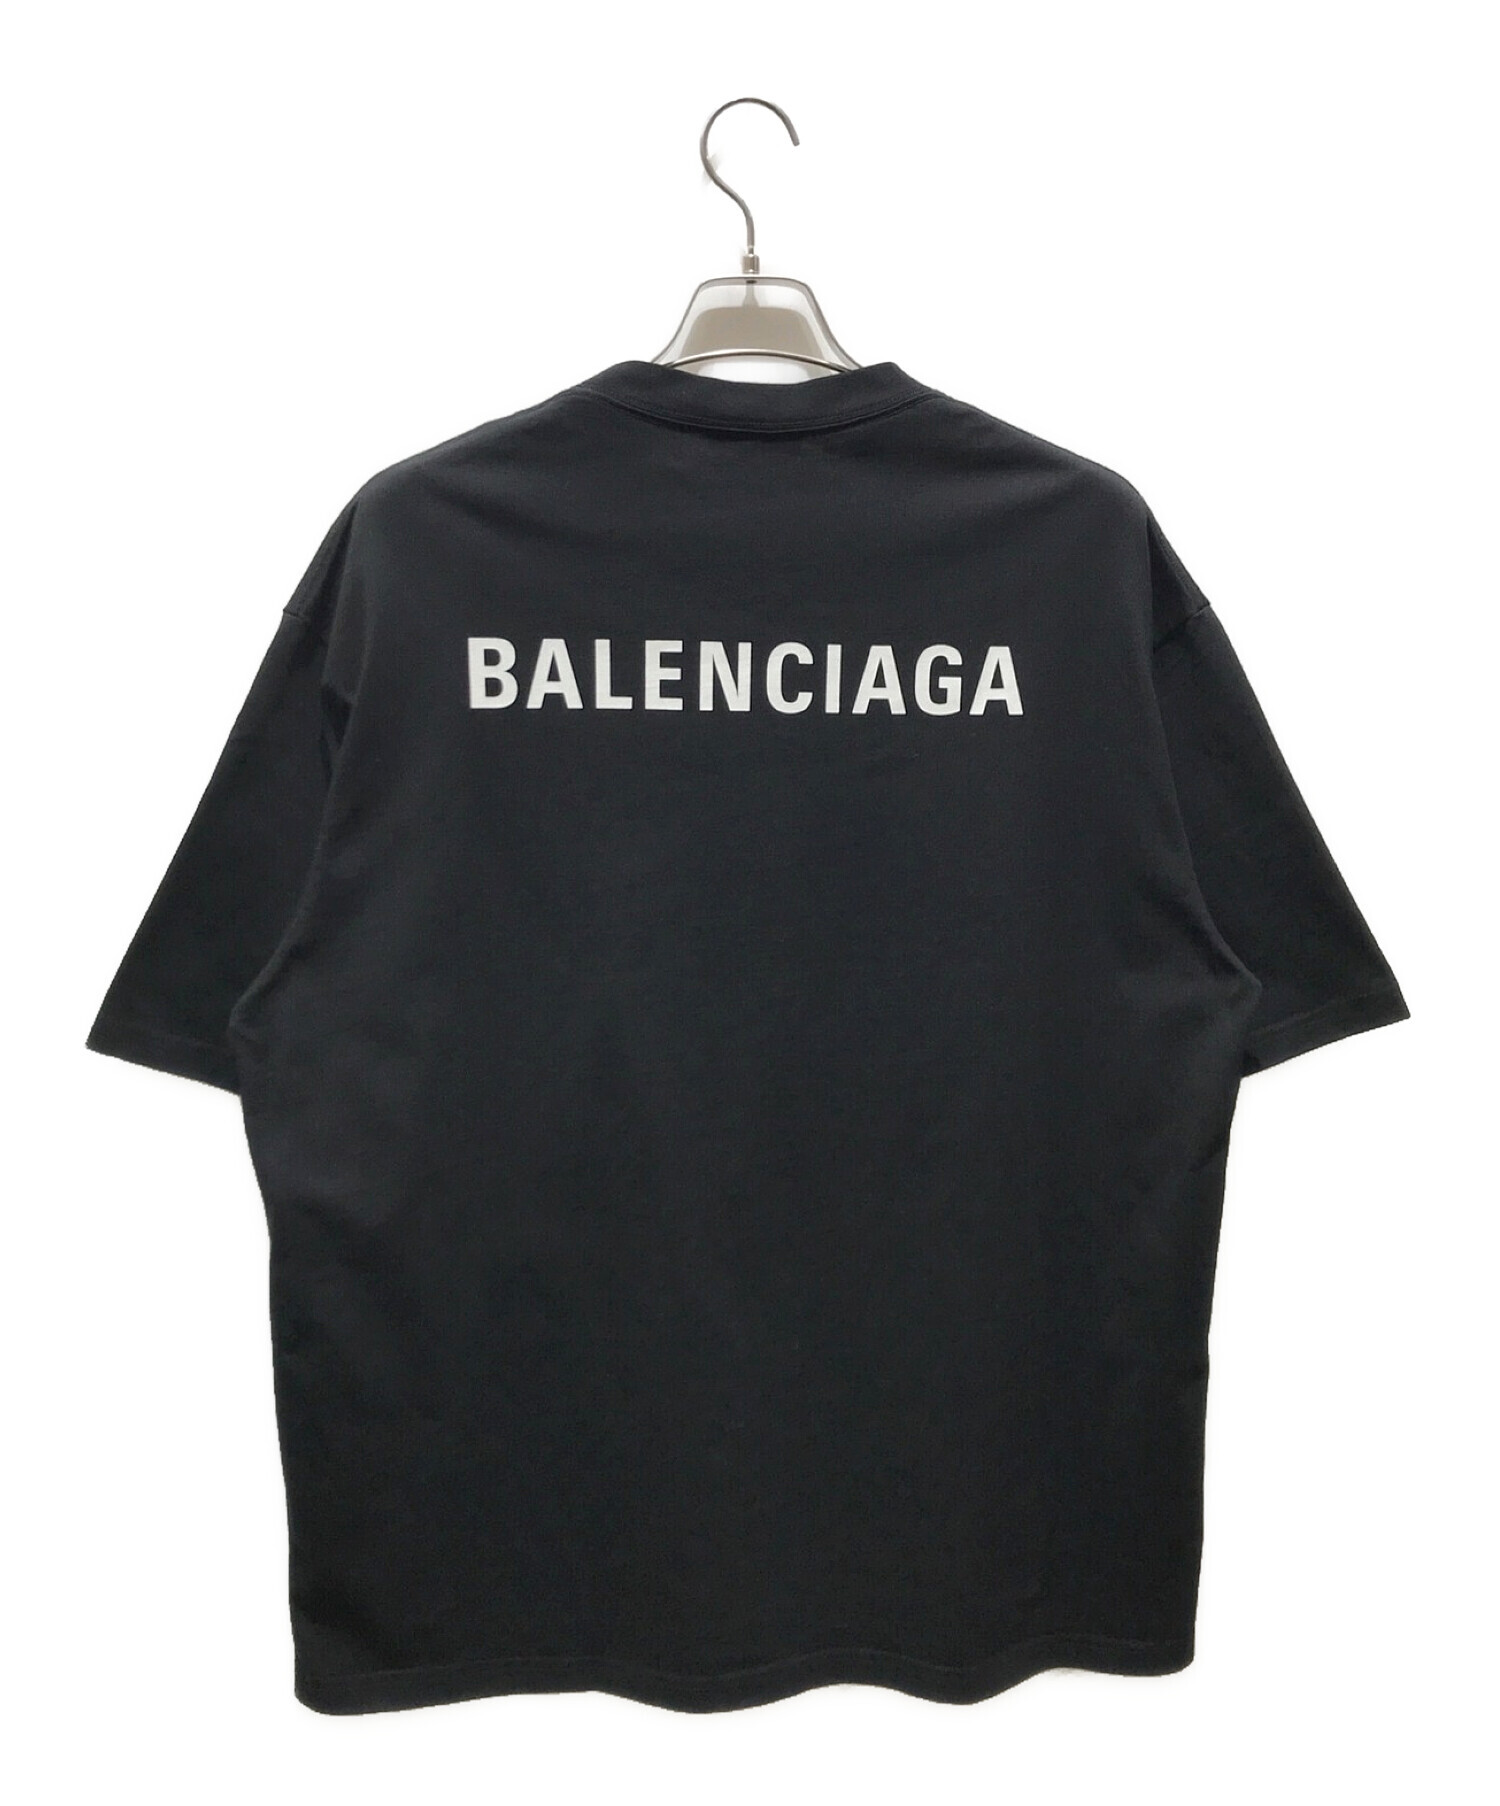 バレンシアガ バックロゴ プリント Tシャツ トップス オーバーサイズ